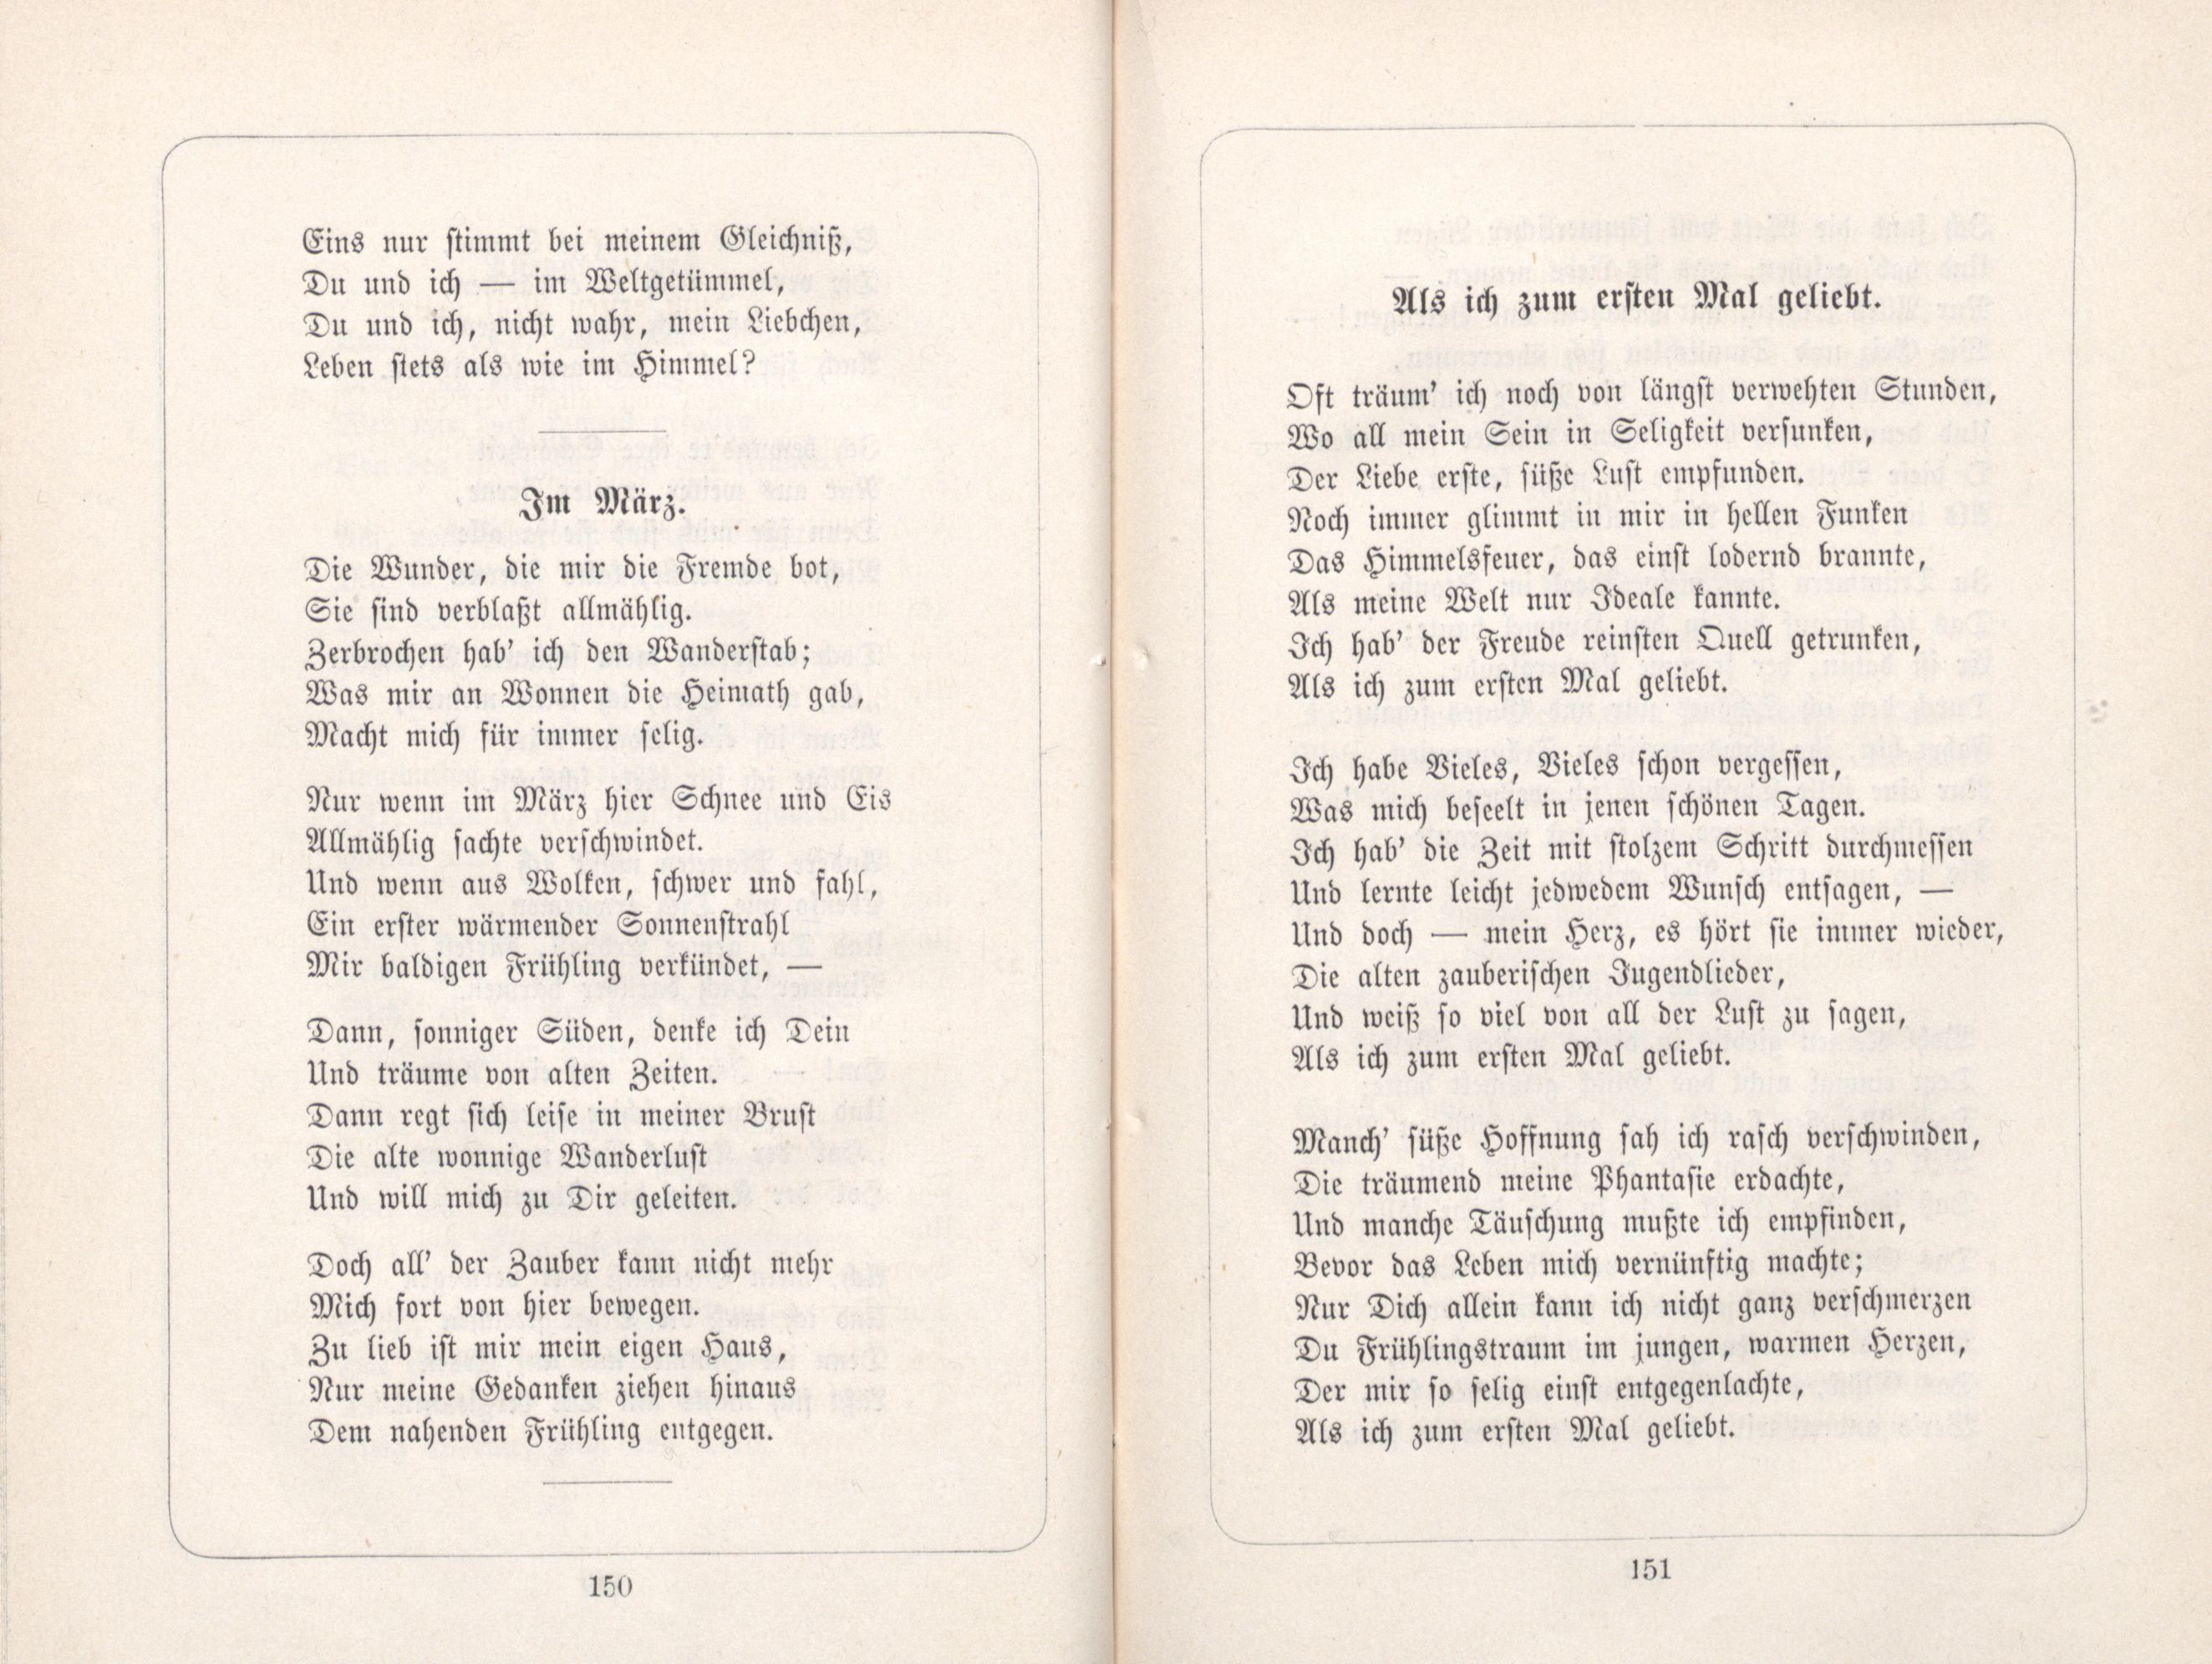 Als ich zum ersten Mal geliebt (1885) | 1. (150-151) Main body of text